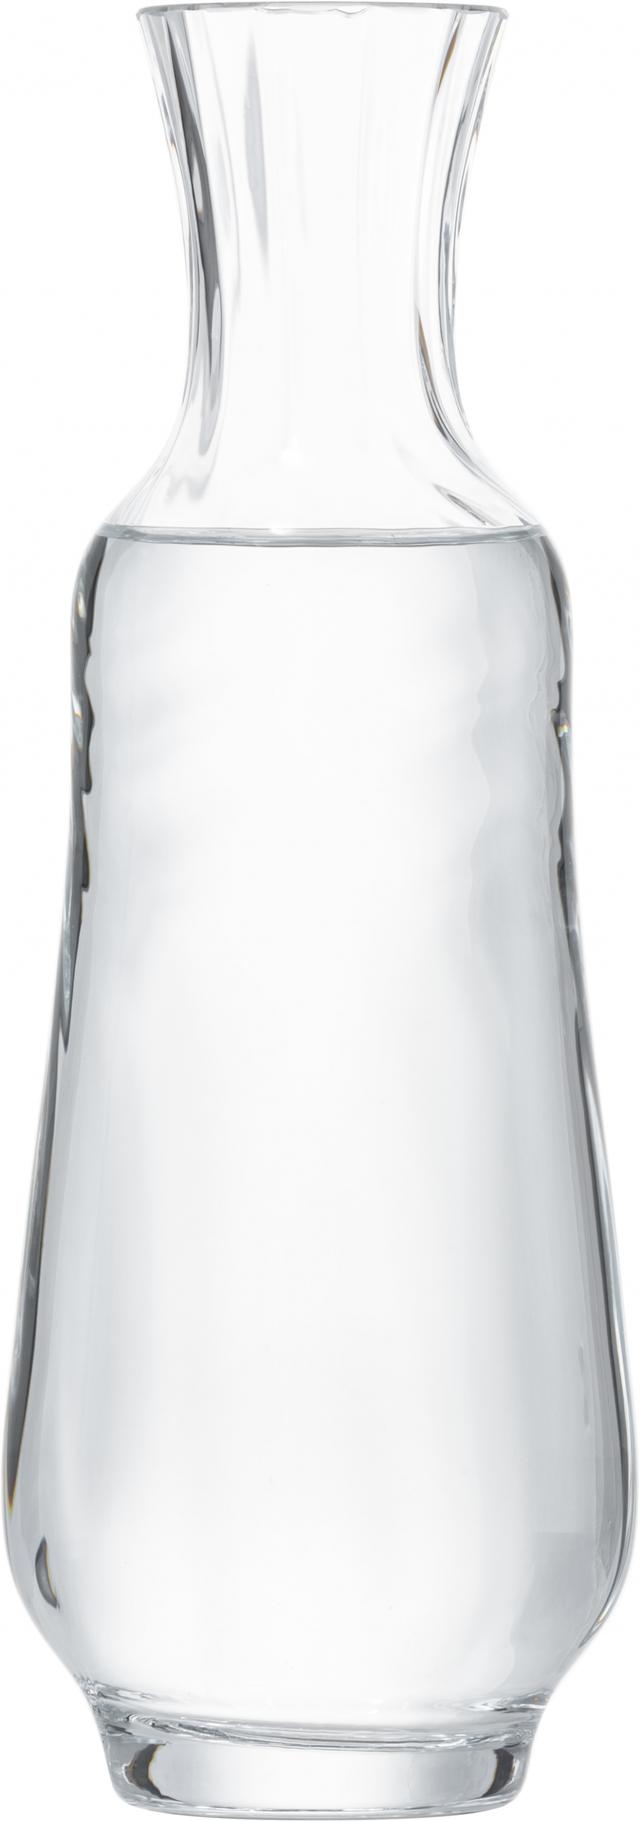 zwiesel glas marlène waterfles - 0.75ltr